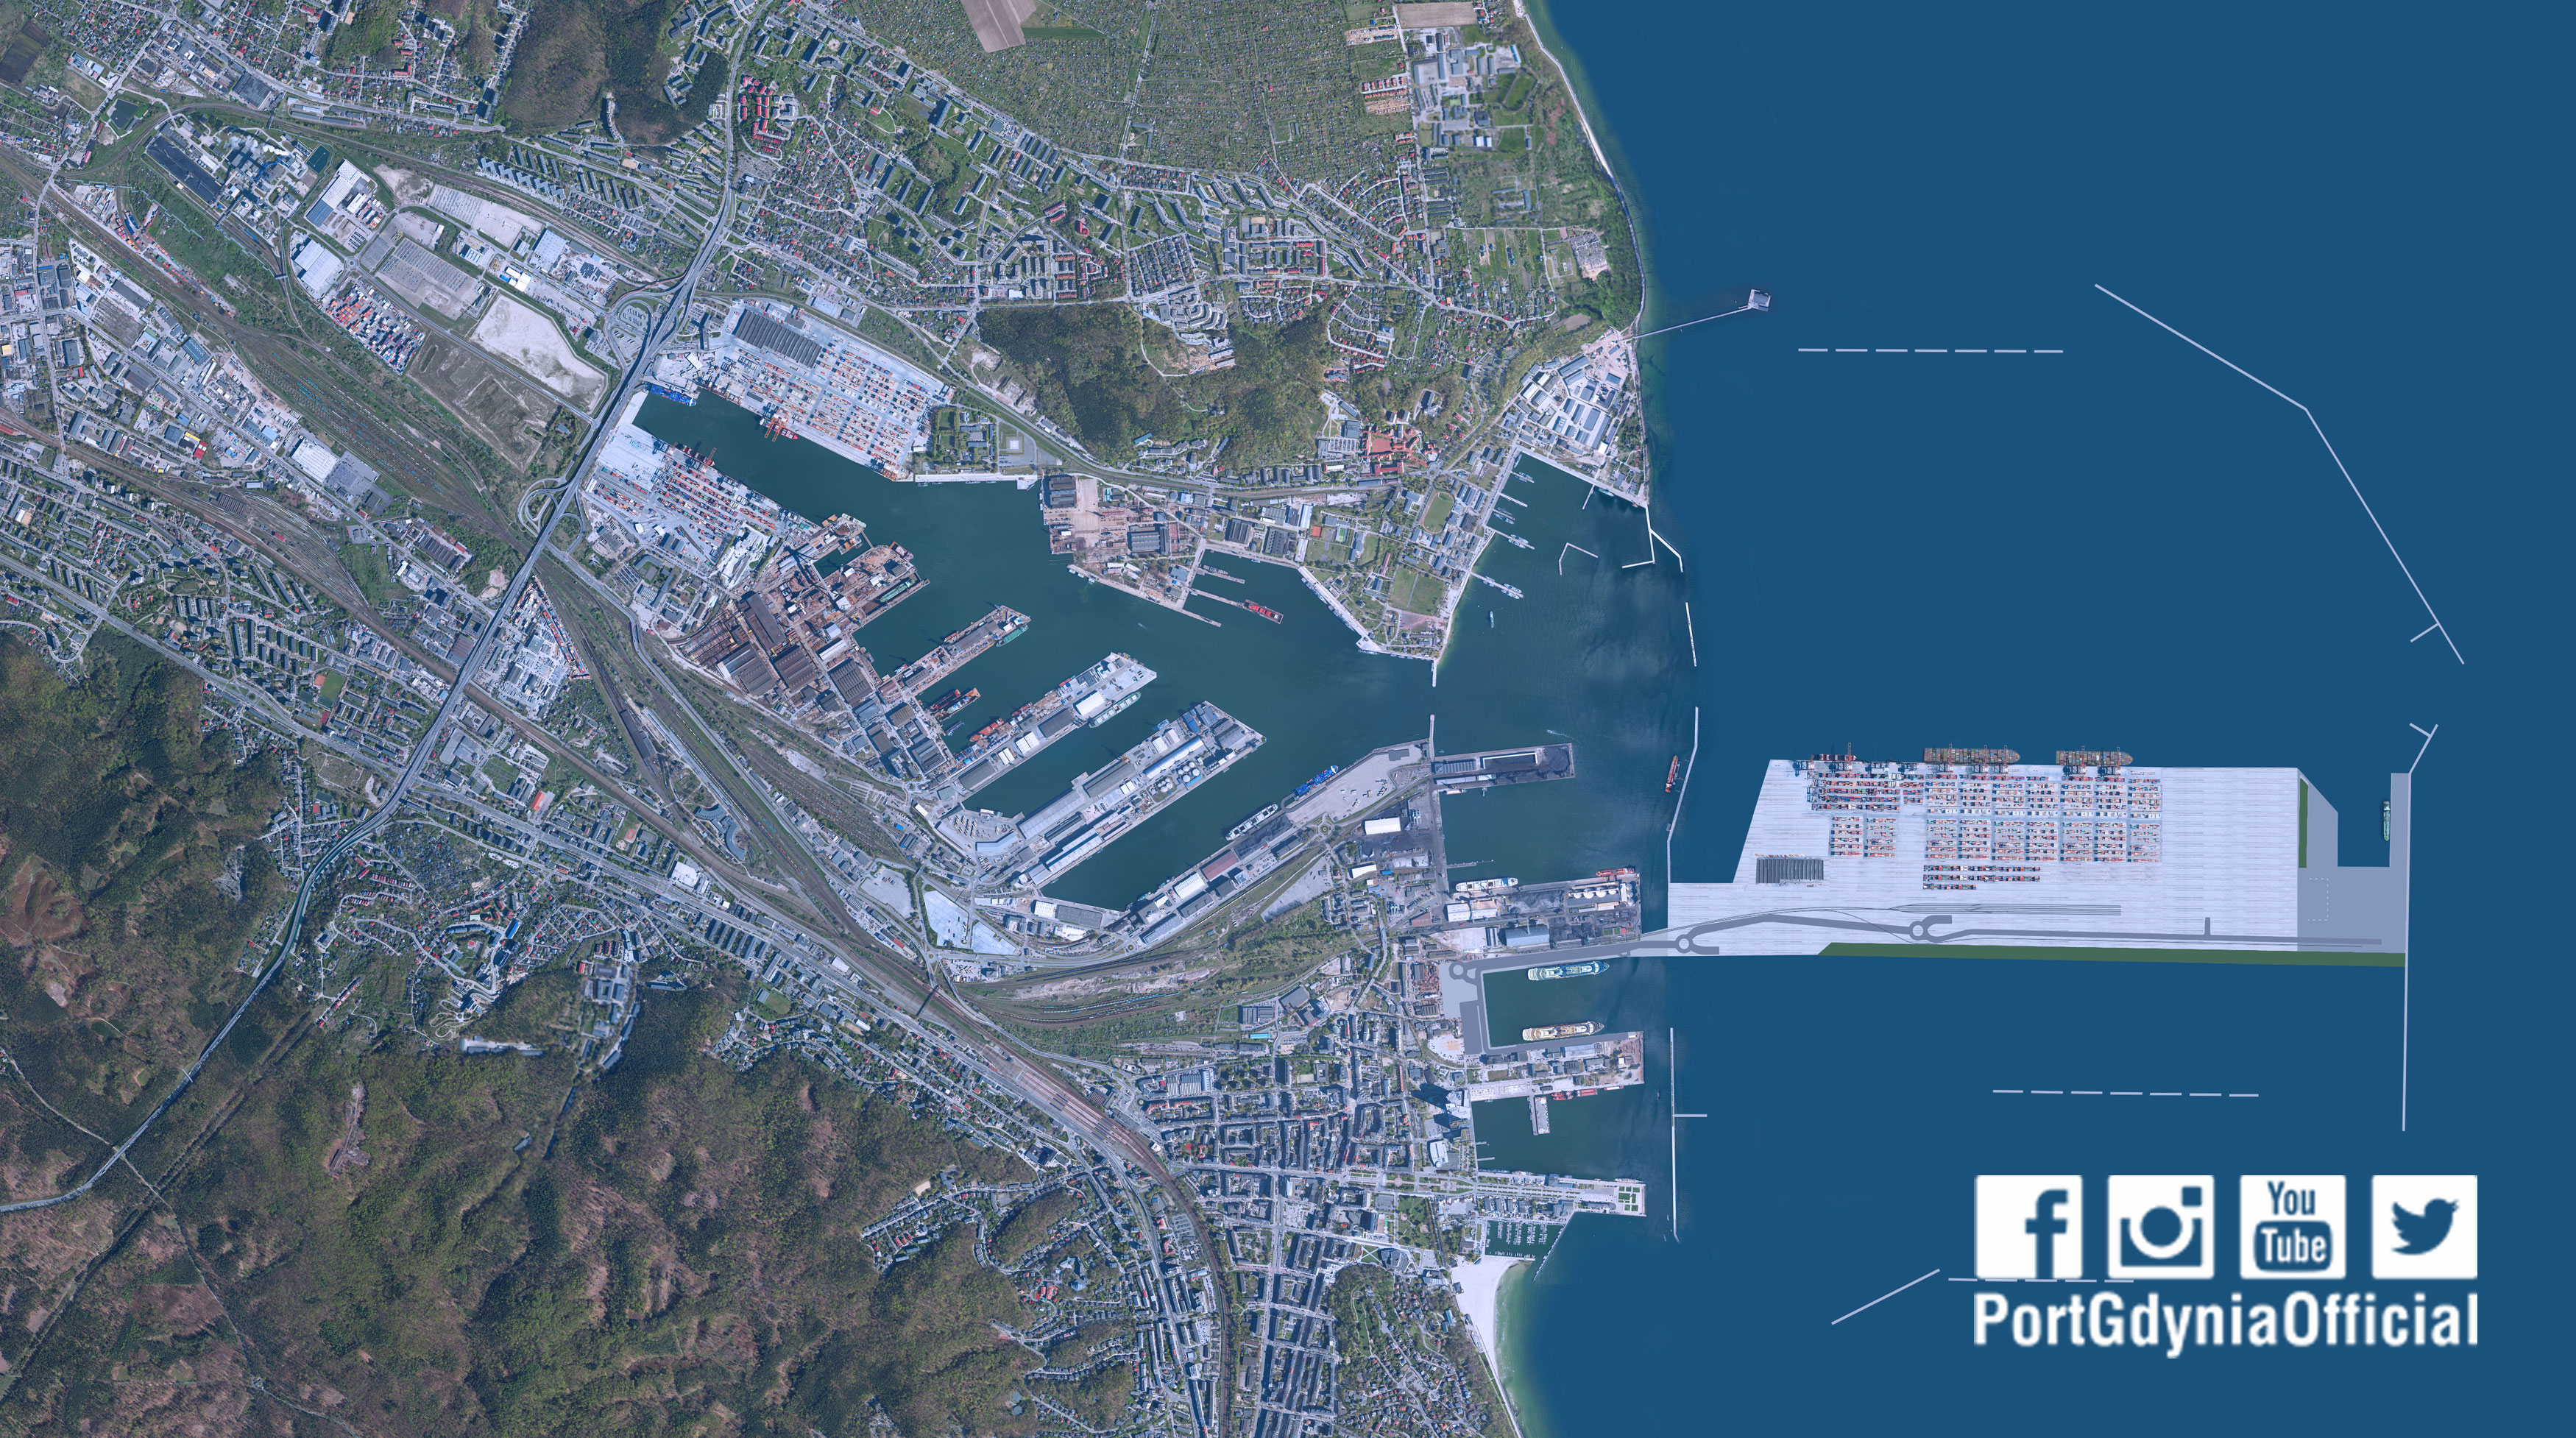 Planowany zarys Portu Zewnętrznego w Gdyni, mat. prasowe / www.port.gdynia.pl